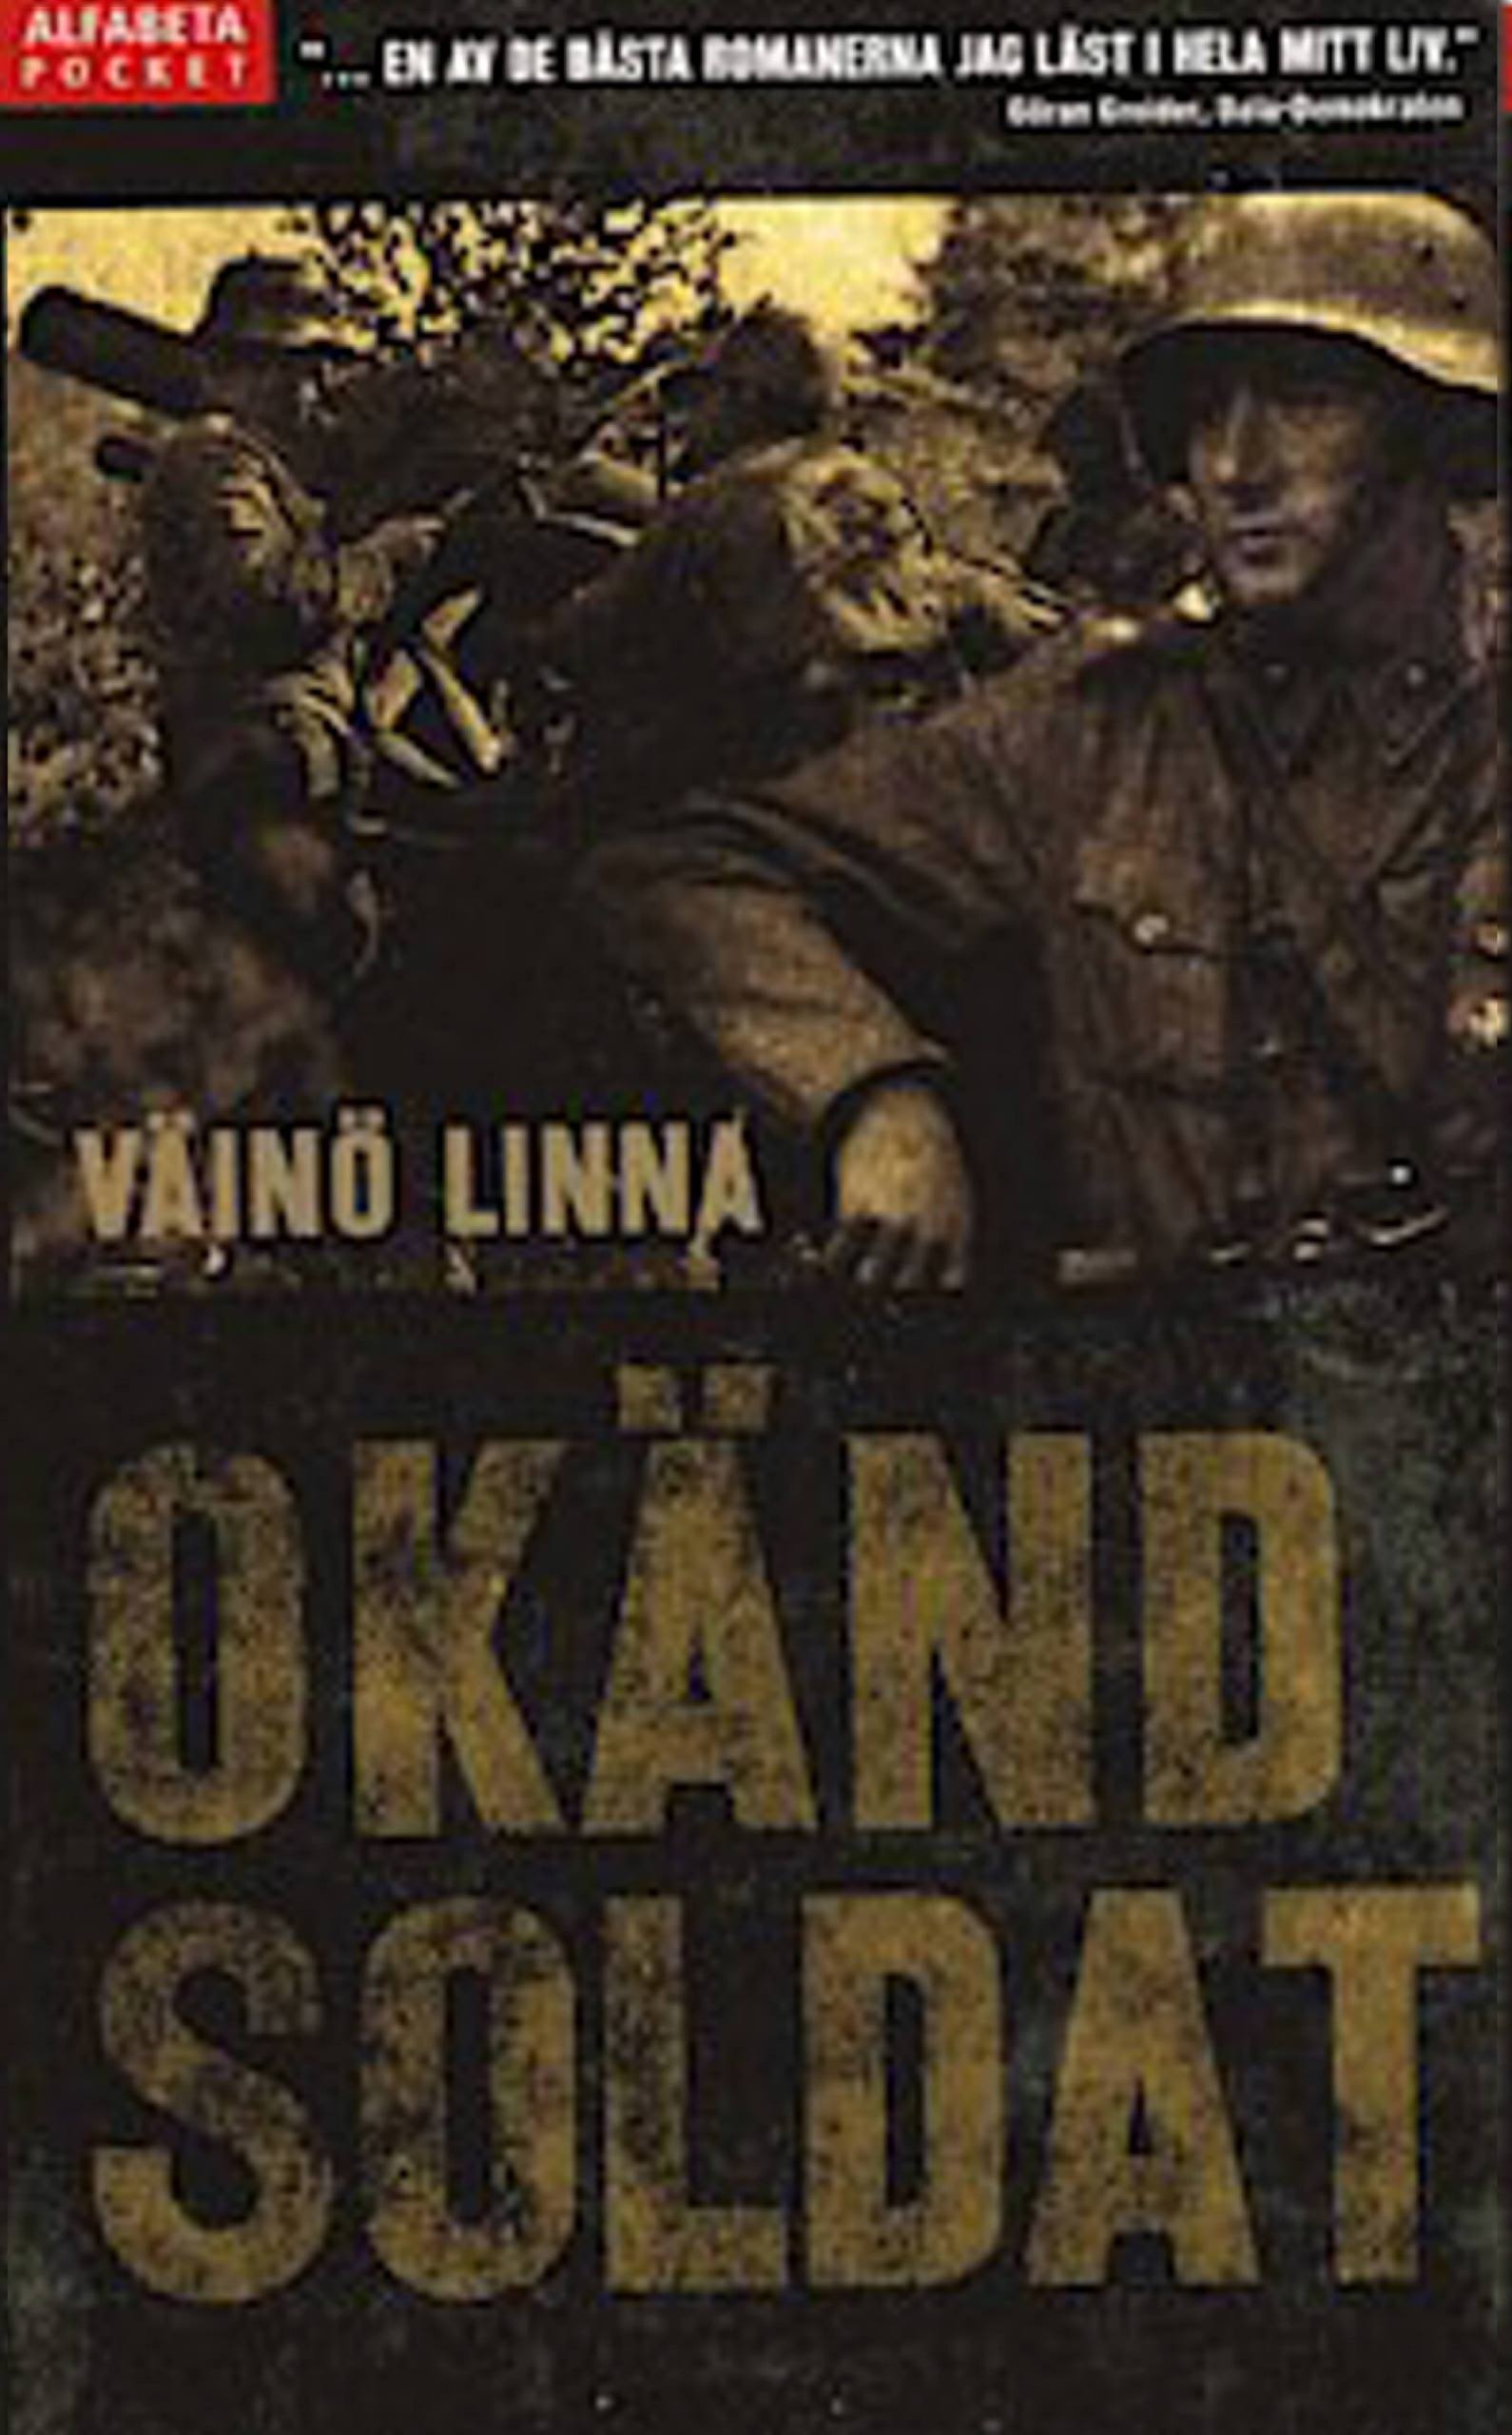 Väinö Linnas Okänd soldat – ett 60-års minne – Dala-Demokraten